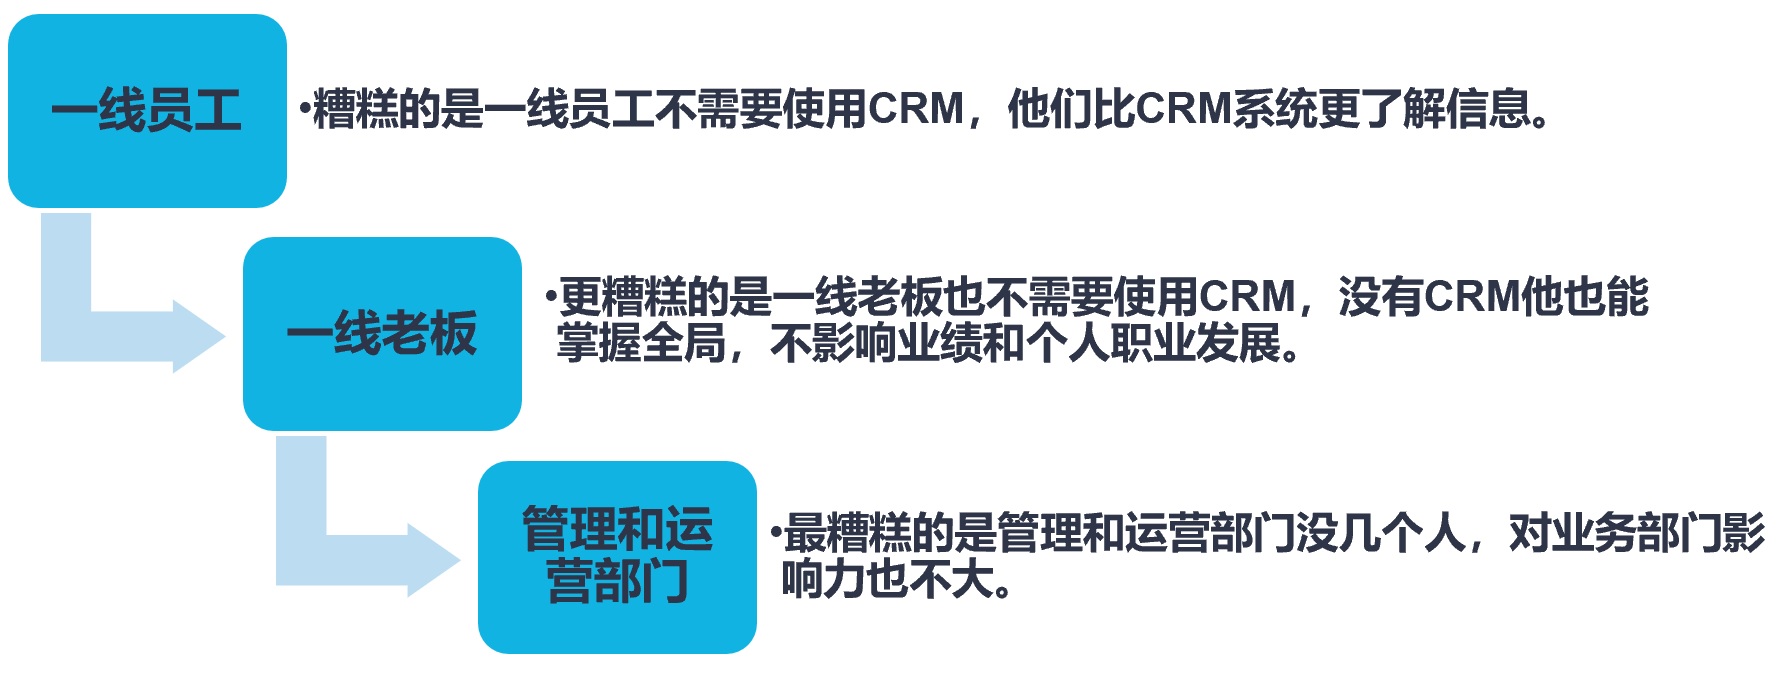 CRM项目高风险的快速检测试剂-CRM七问